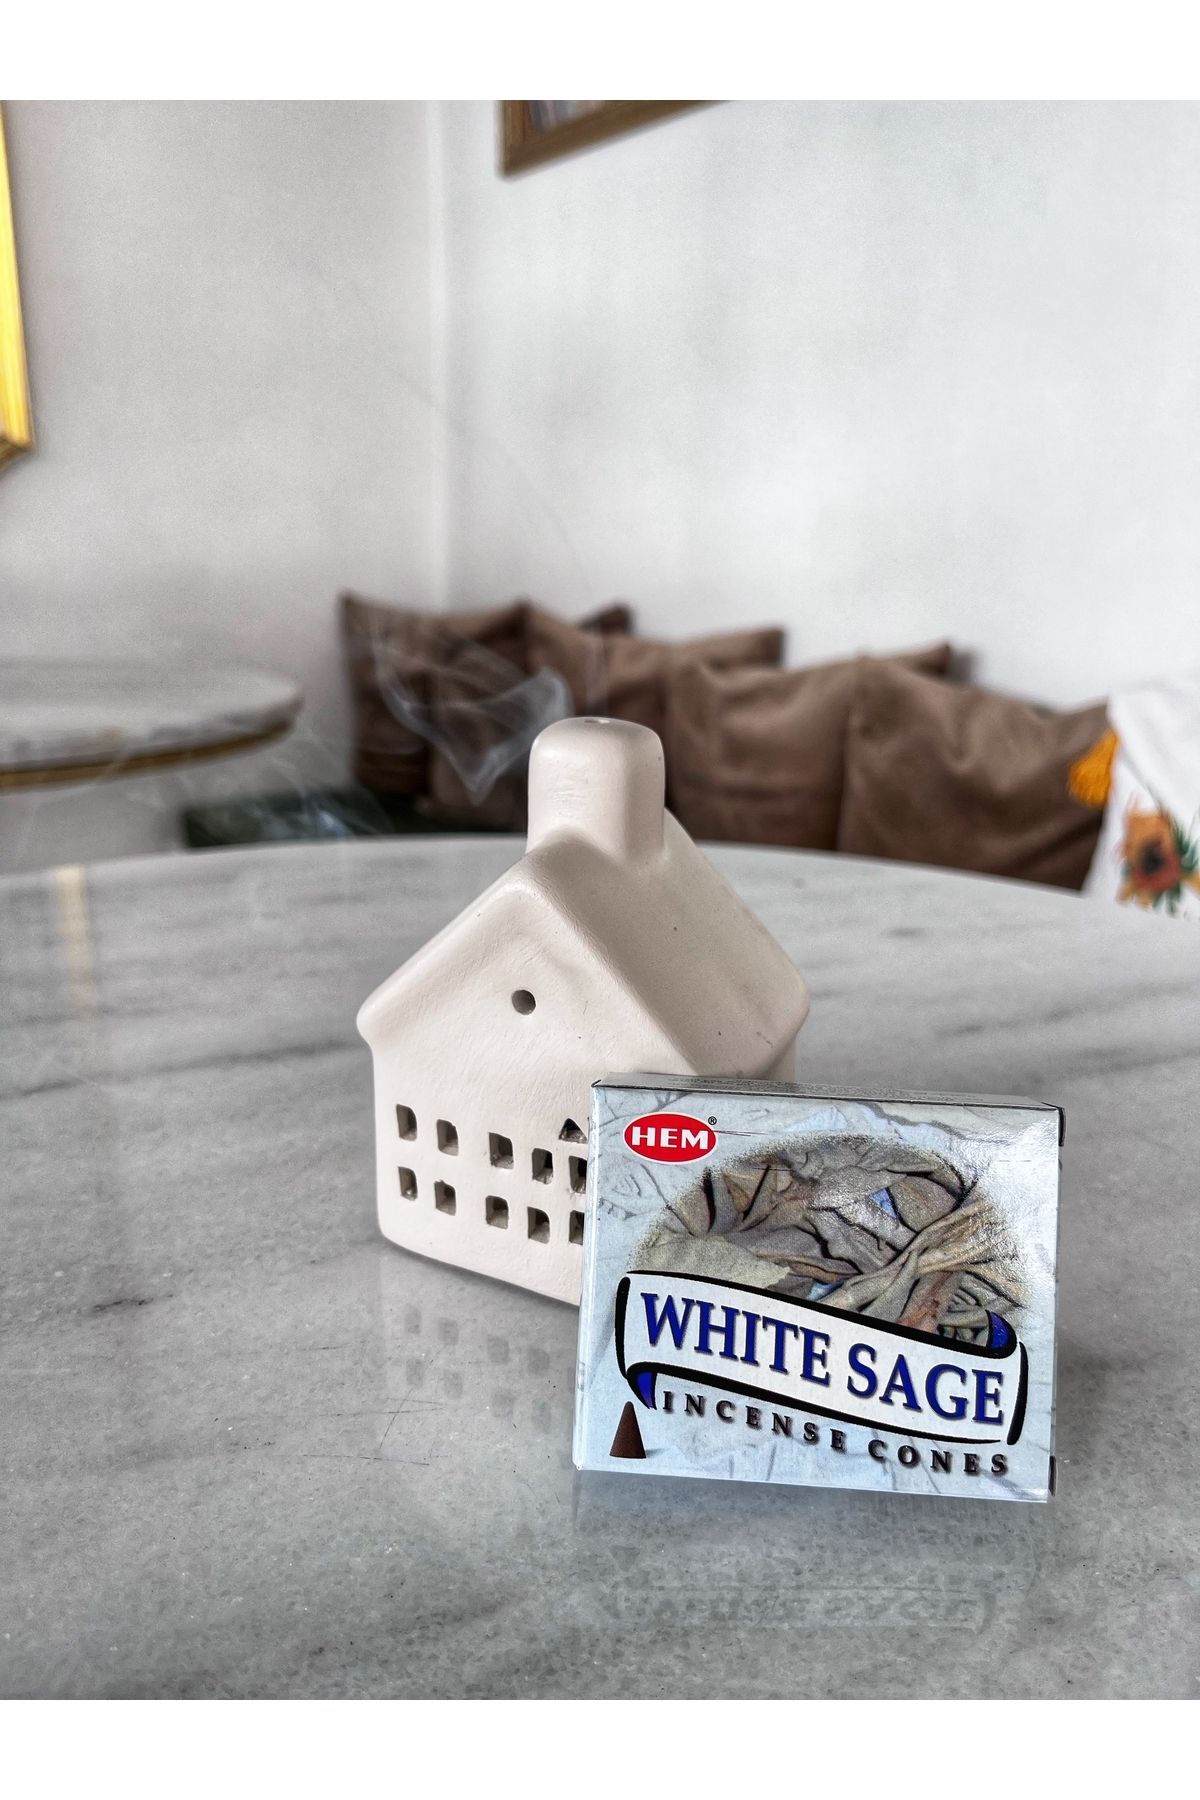 Hem Beyaz Adaçayı (White Sage) Konik Tütsü (10 Adet)